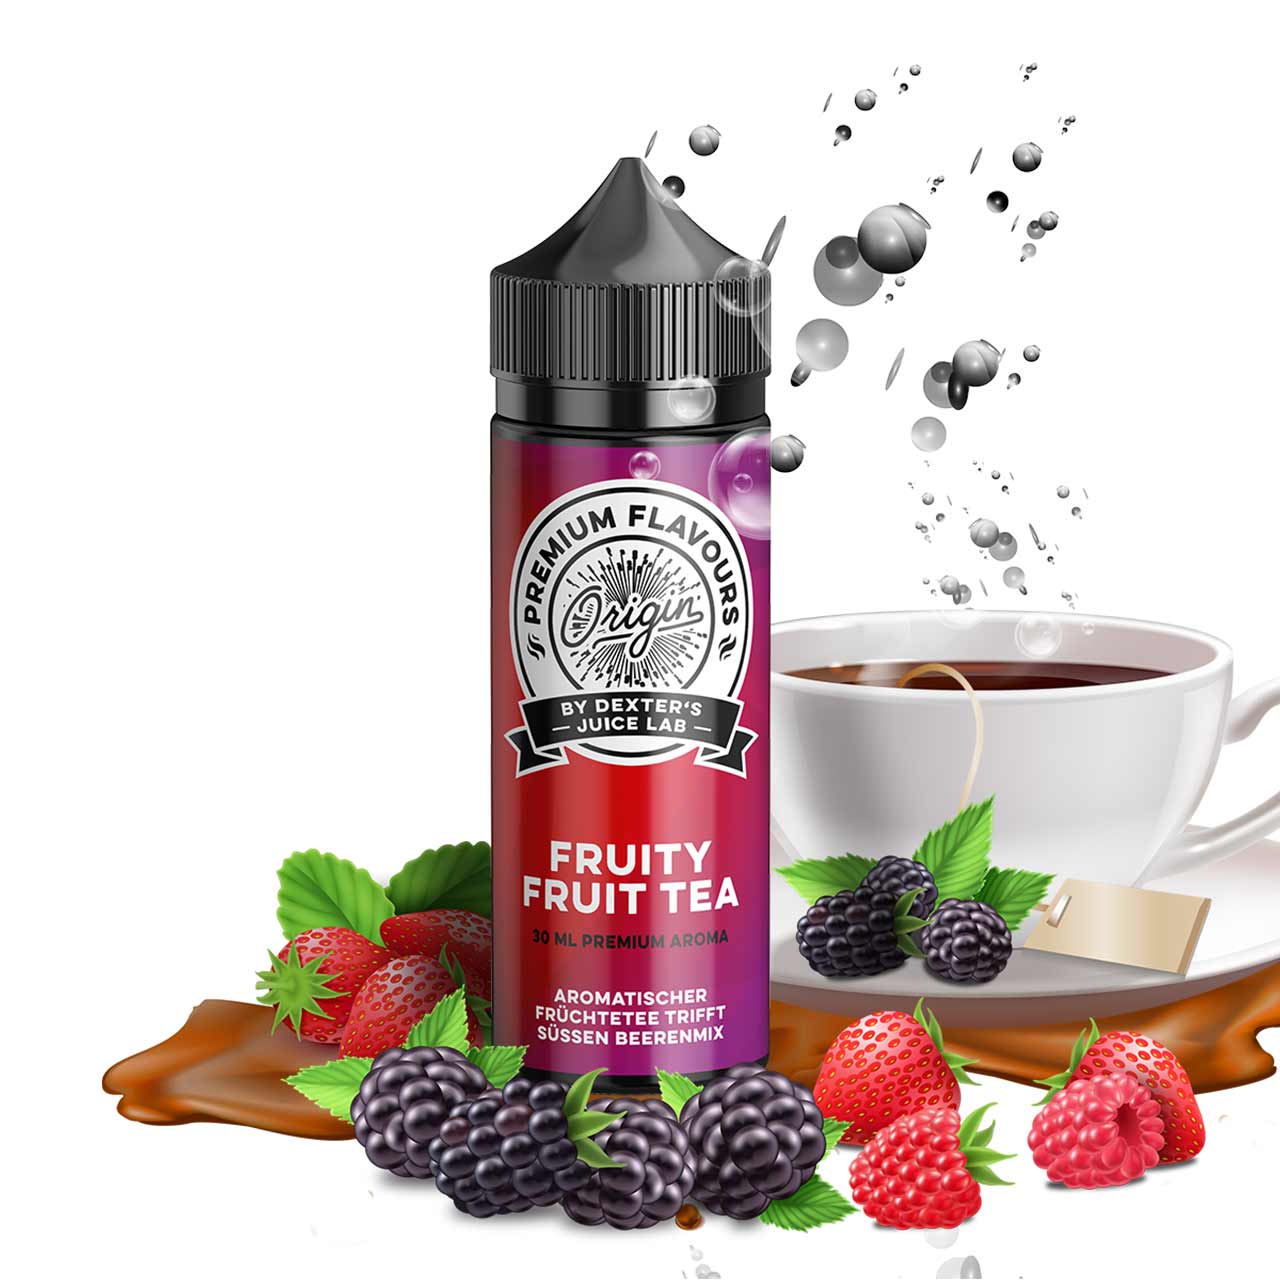 Dexter's Juice Lab Origin Fruity Fruit Tea Aroma Longfill